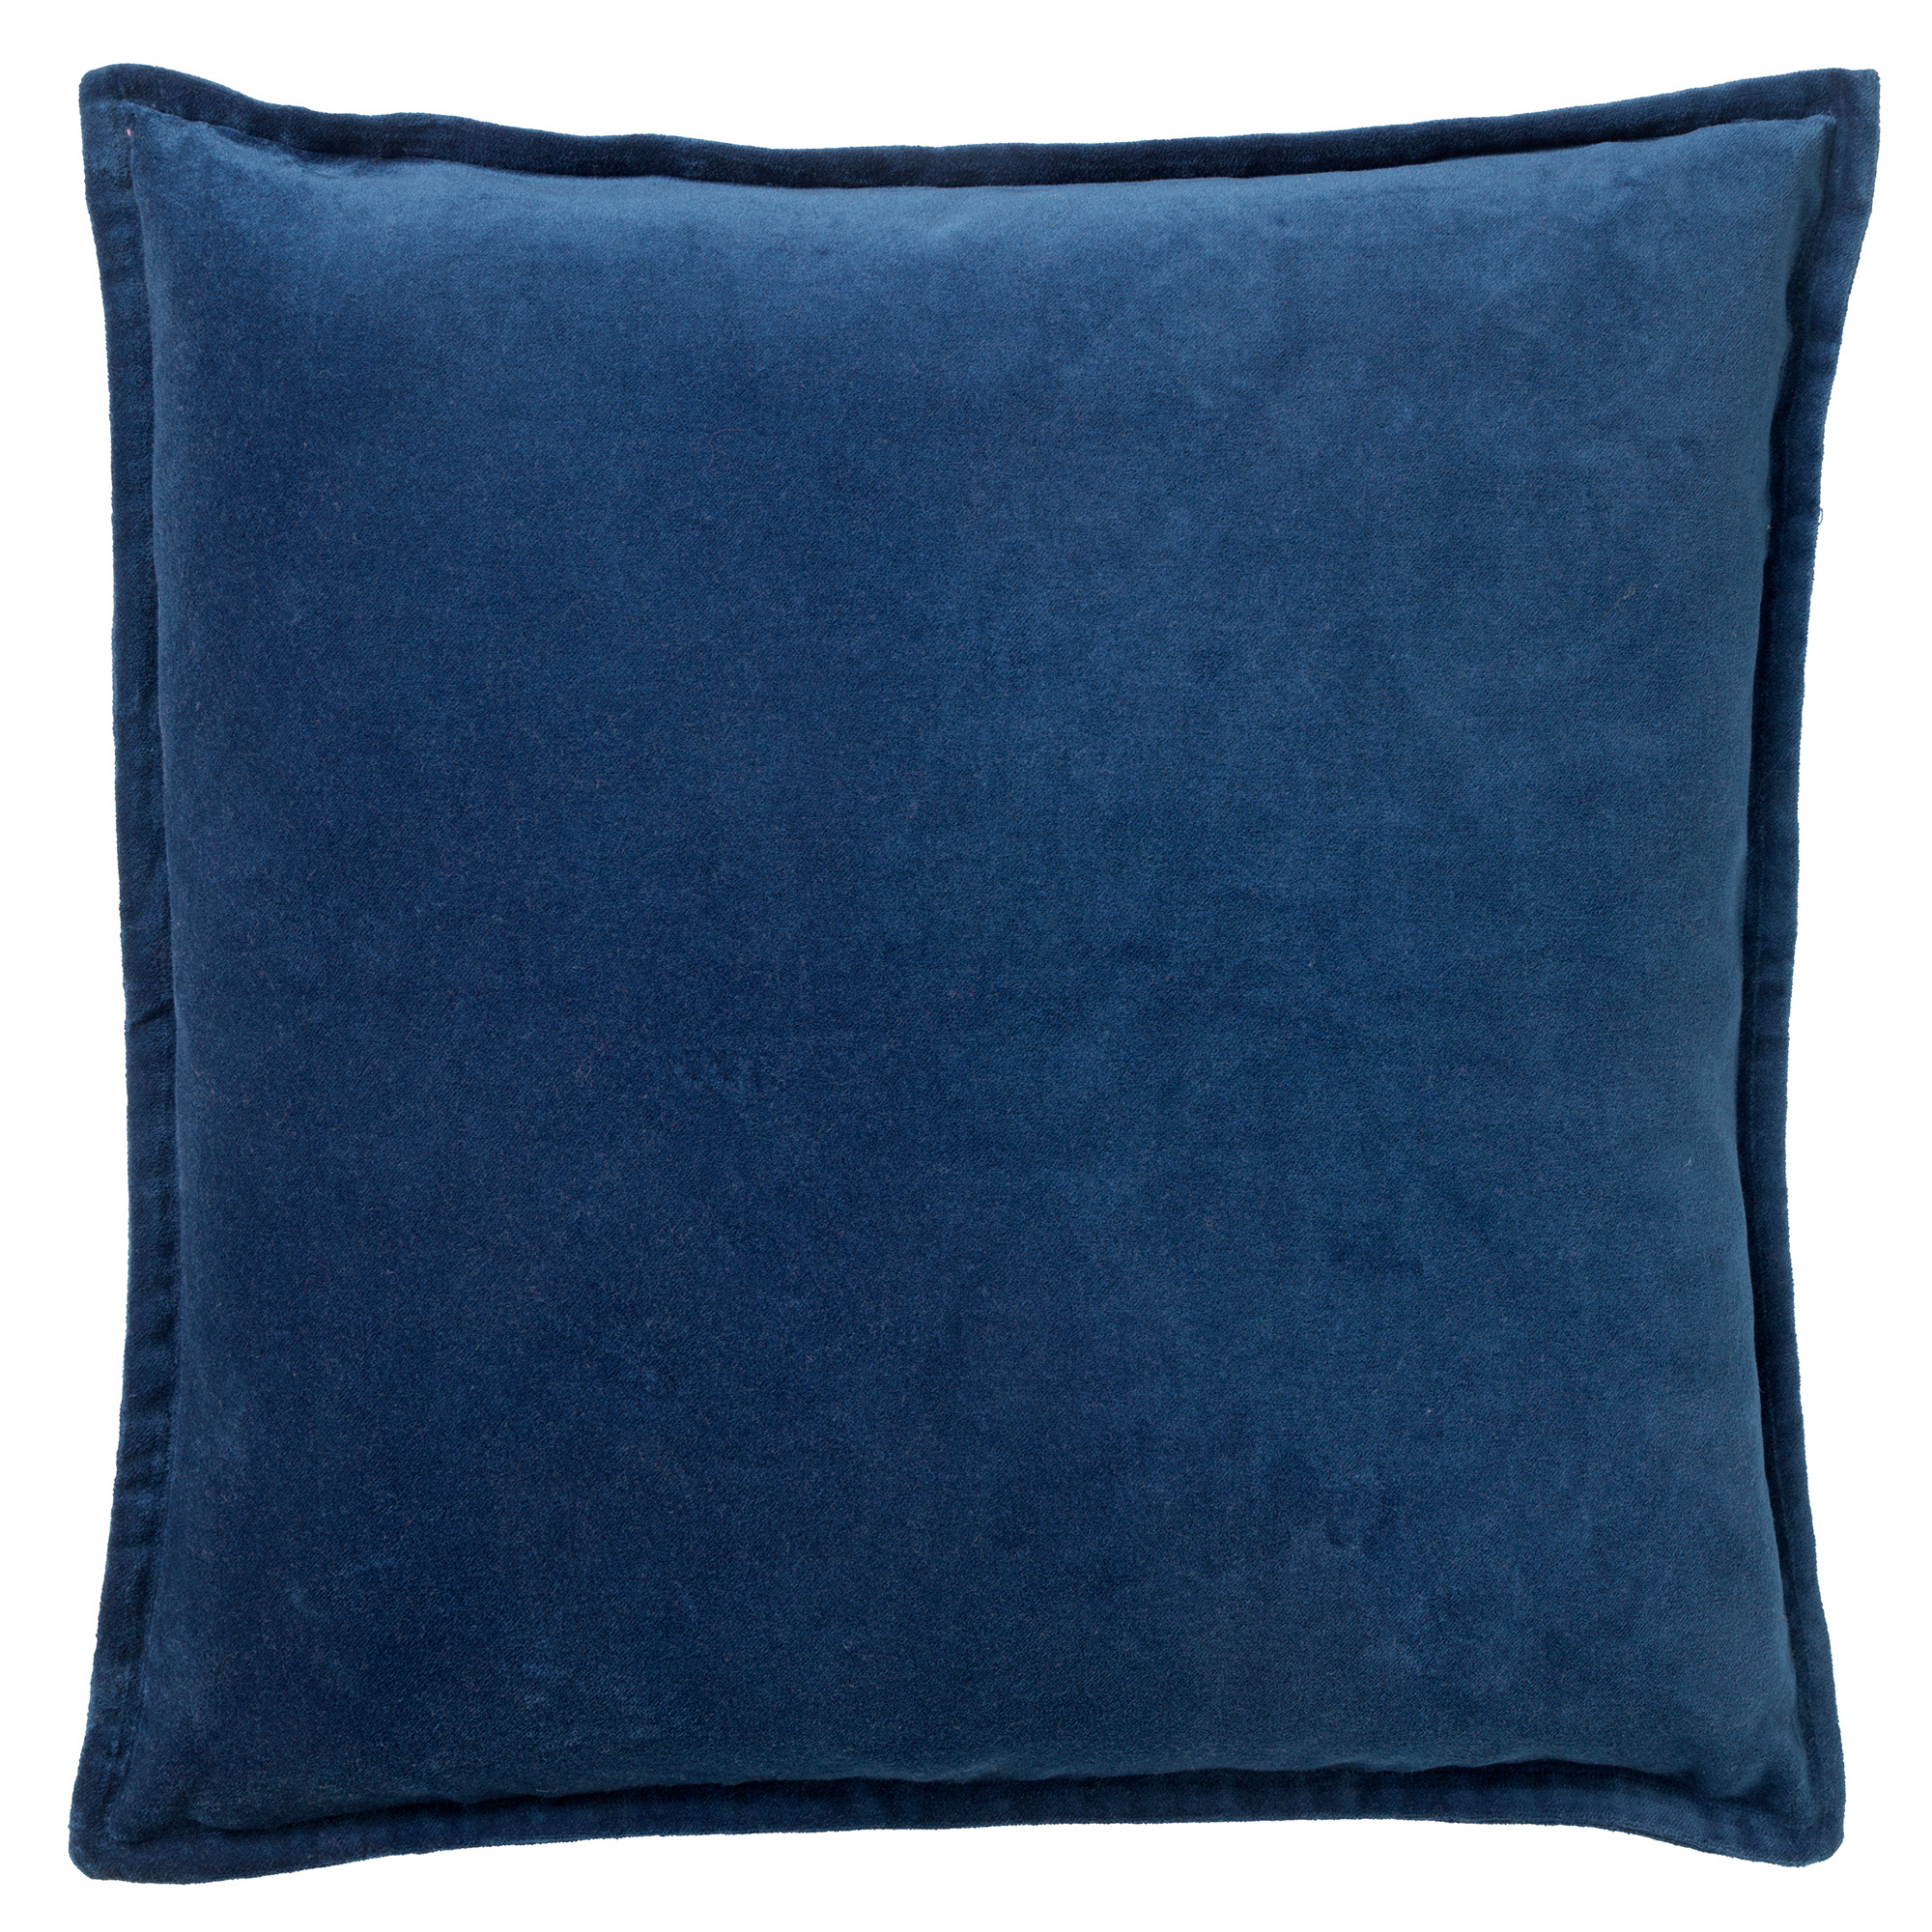 CAITH - Sierkussen 50x50 cm - 100% katoen velvet - lekker zacht - Insignia Blue - donkerblauw